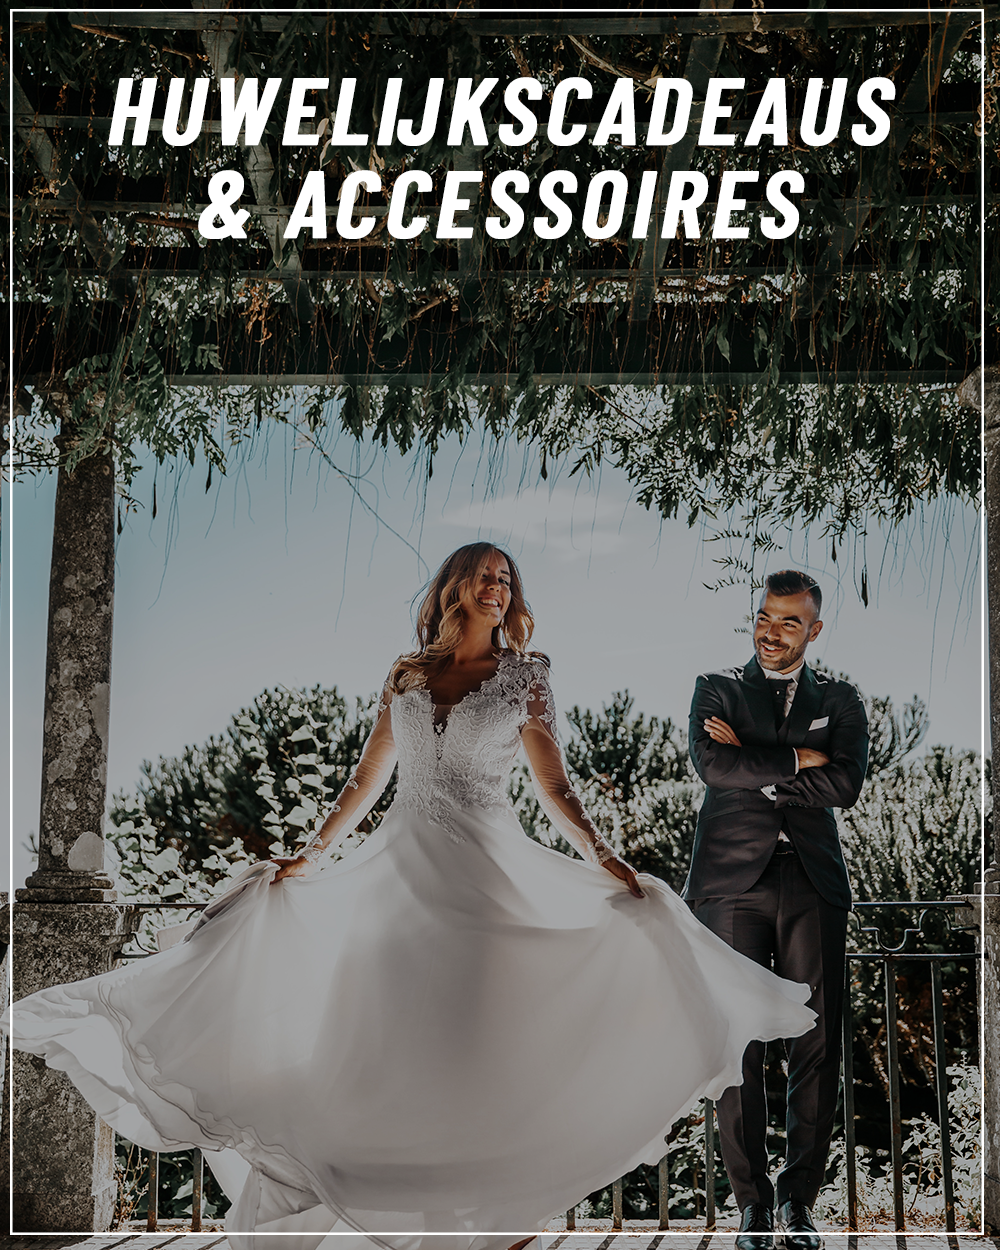 snelheid onderpand Dinkarville Huwelijk | Must-have cadeaus & accessoires voor de volgende bruiloft